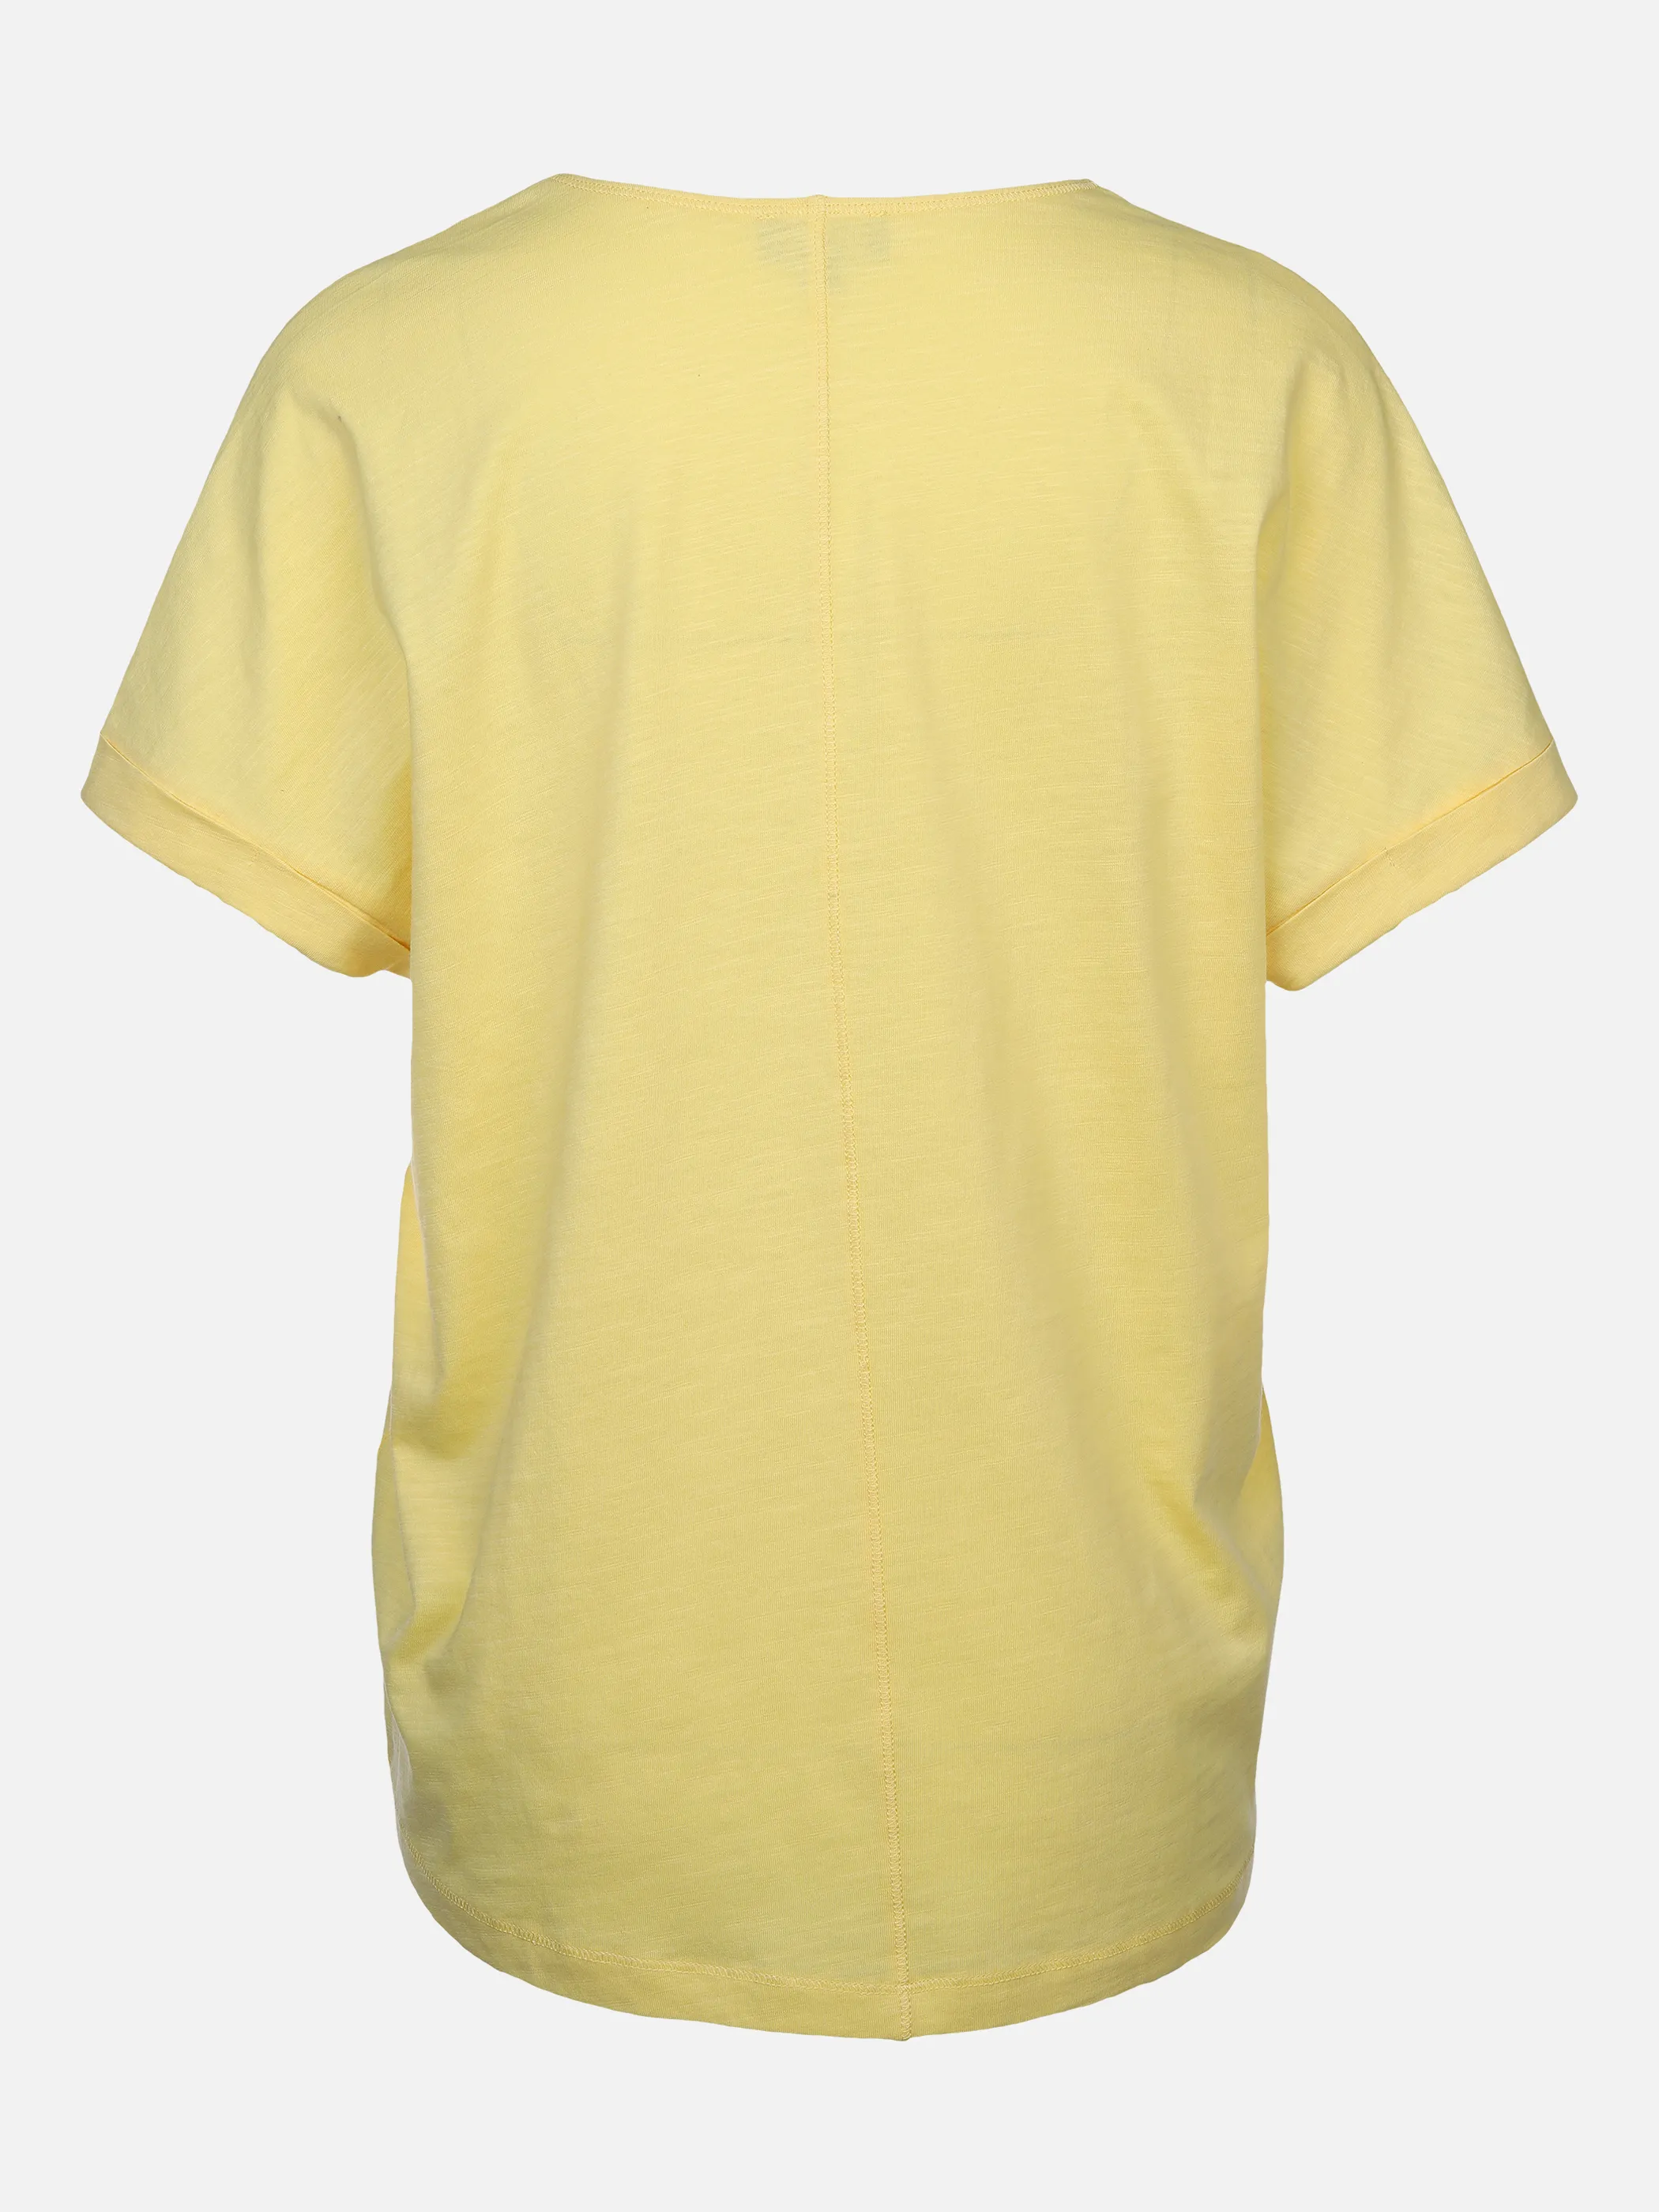 Sure Da-Shirt m.übergroßer Schulter Gelb 873373 VANILLE 2